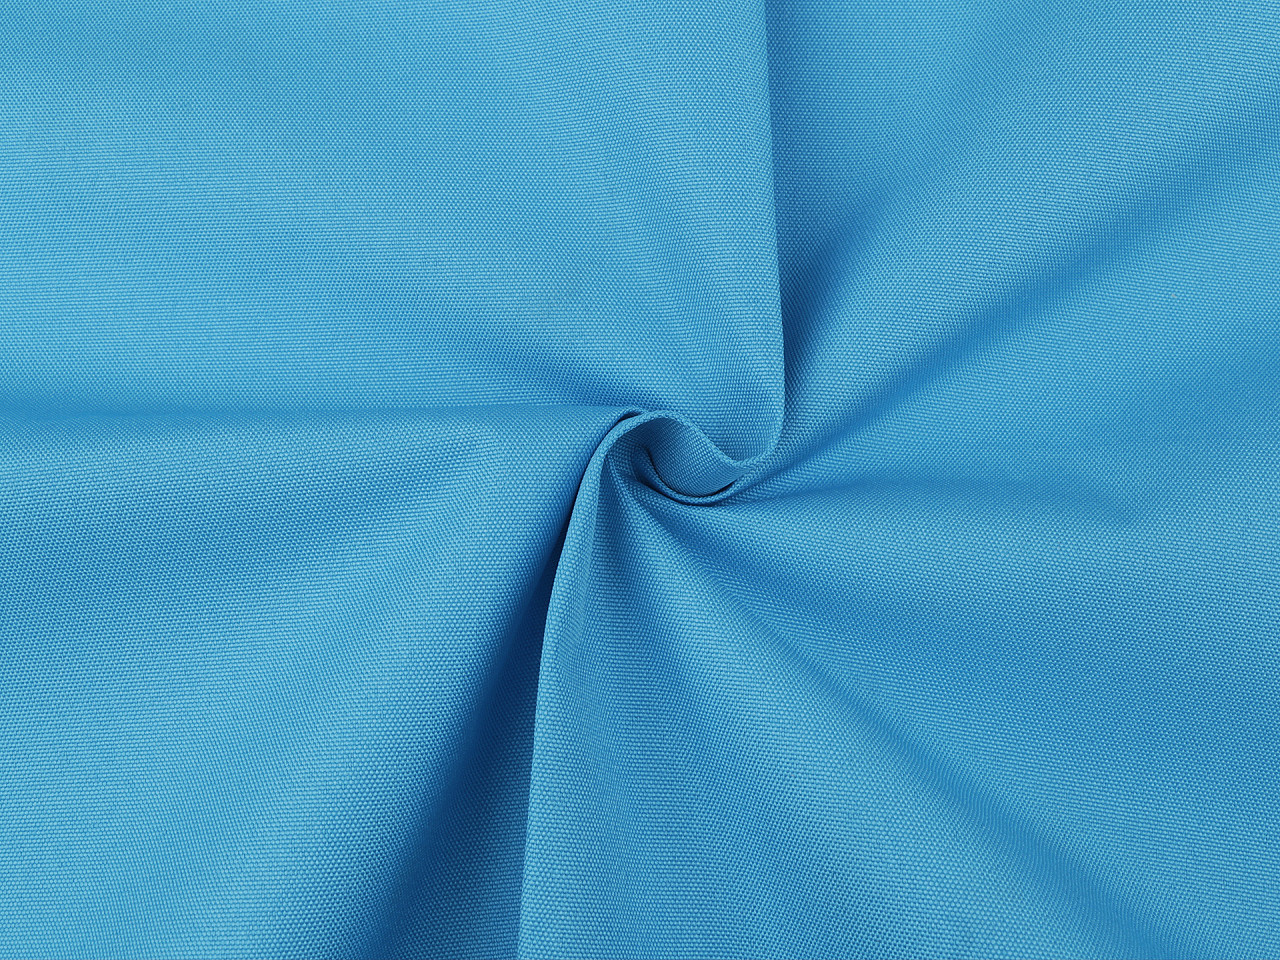 Kočárkovina 900D, barva 7 (47) modrá sytá